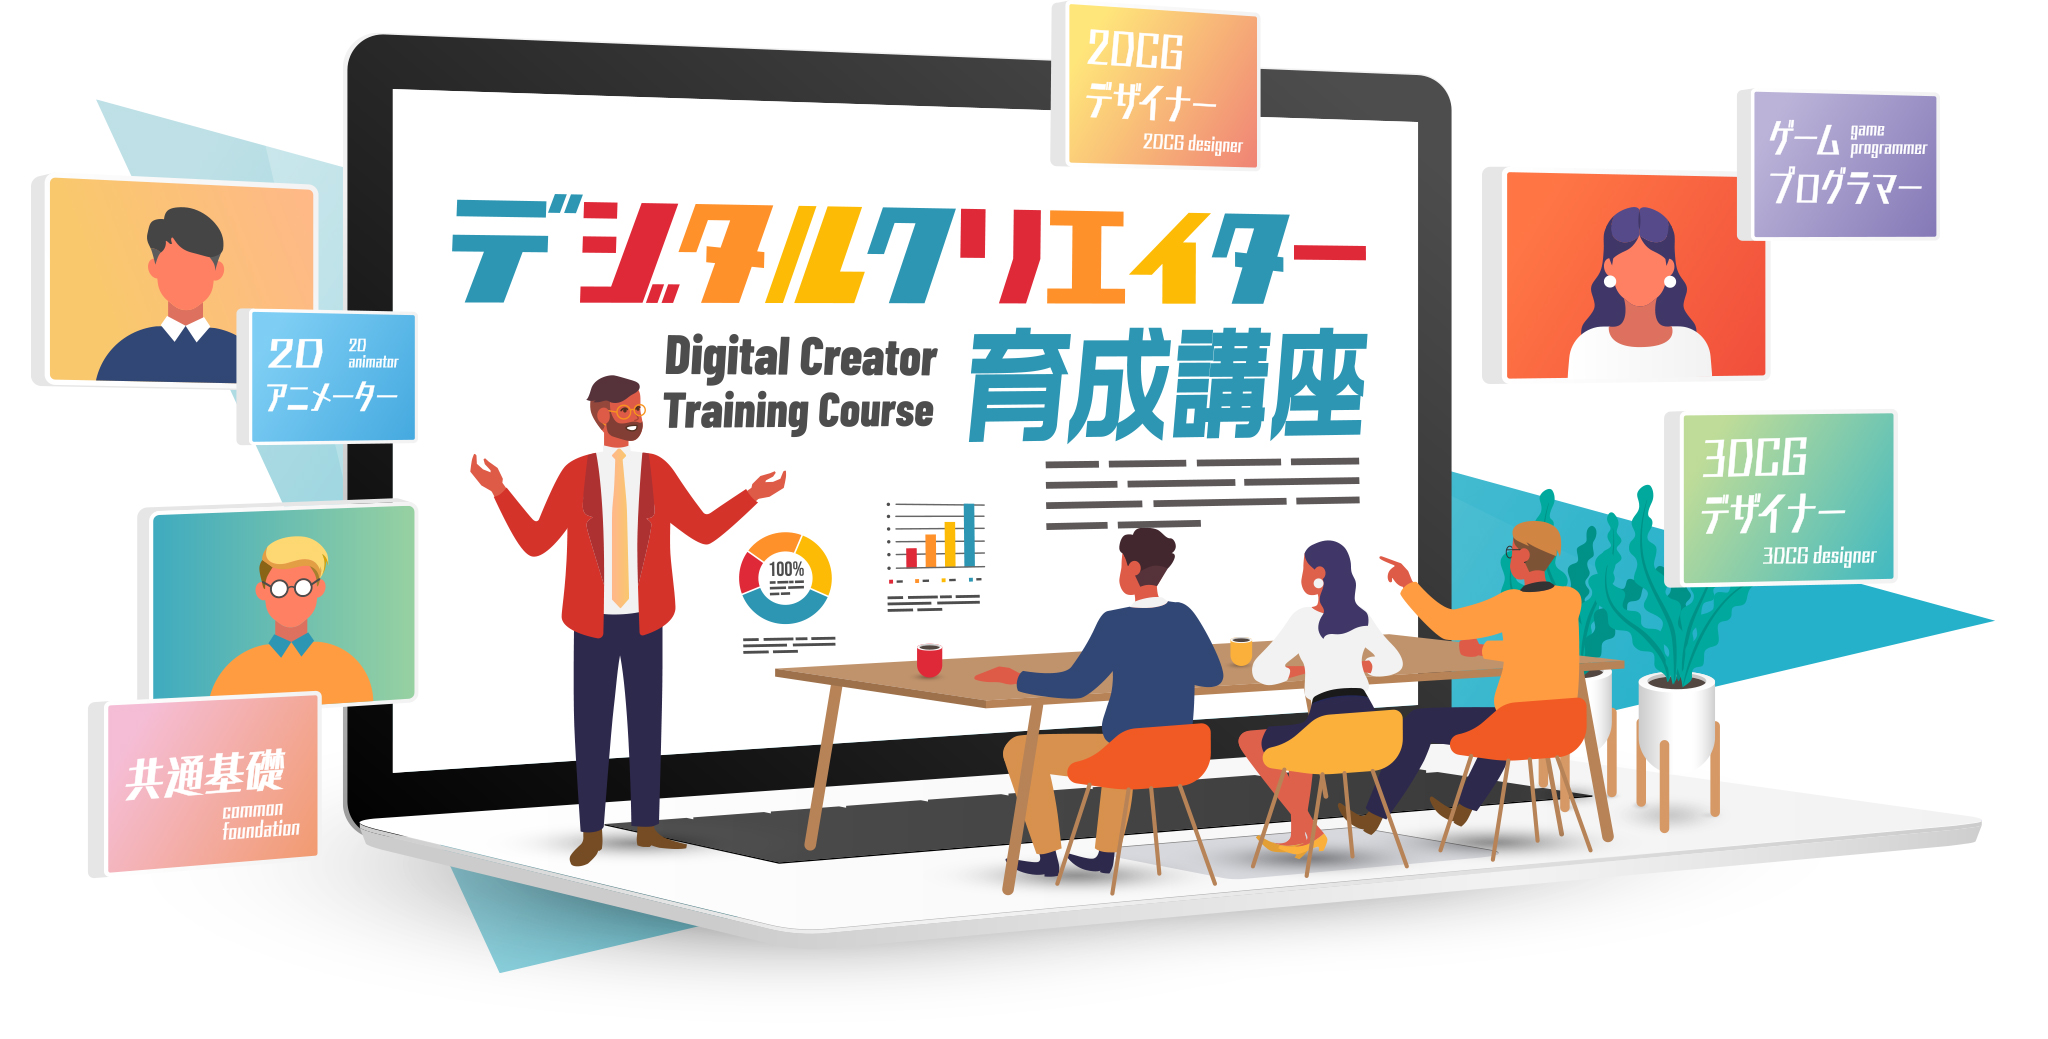 高知県、DX人材育成講座の総合プロデュースにゲーム事業のセガXDを起用[ニュース]